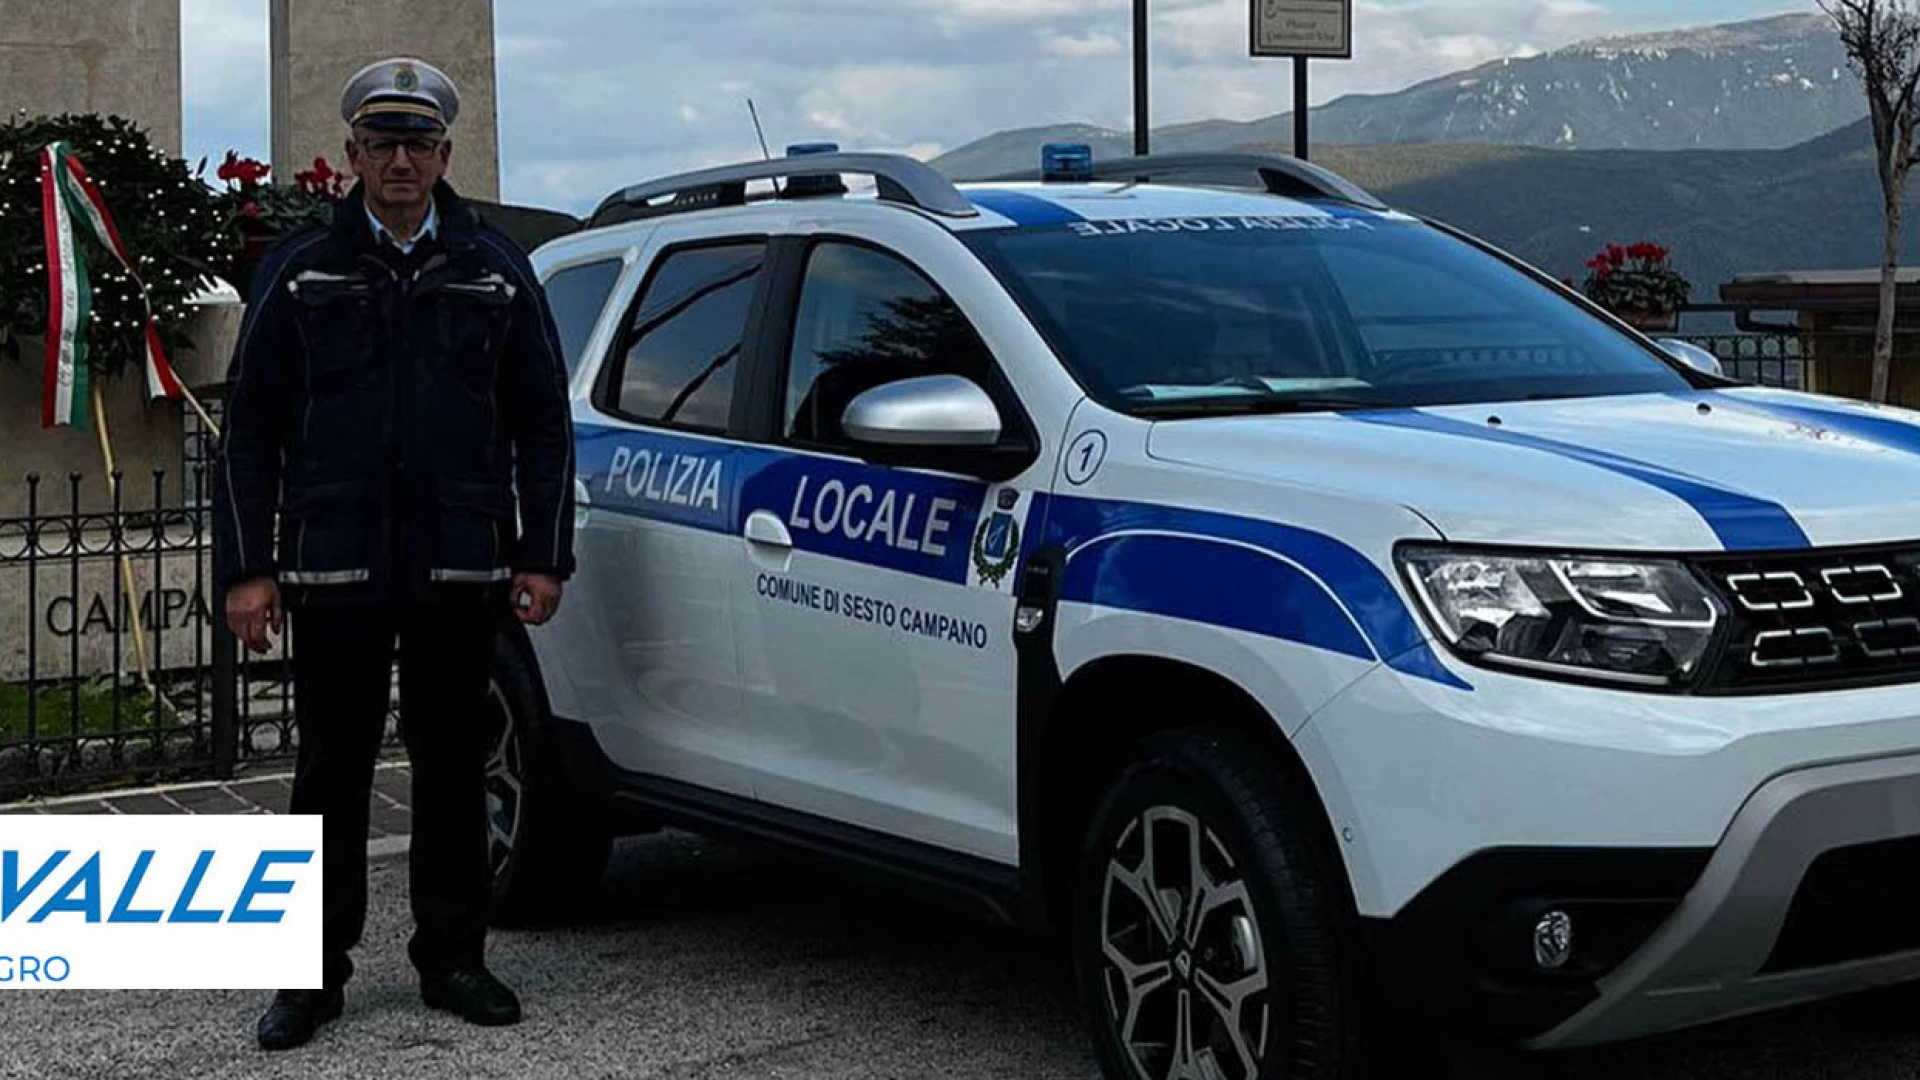 Sesto Campano: il comune amplia il parco macchine. Arrivata la nuova Dacia in dotazione alla Polizia Municipale.